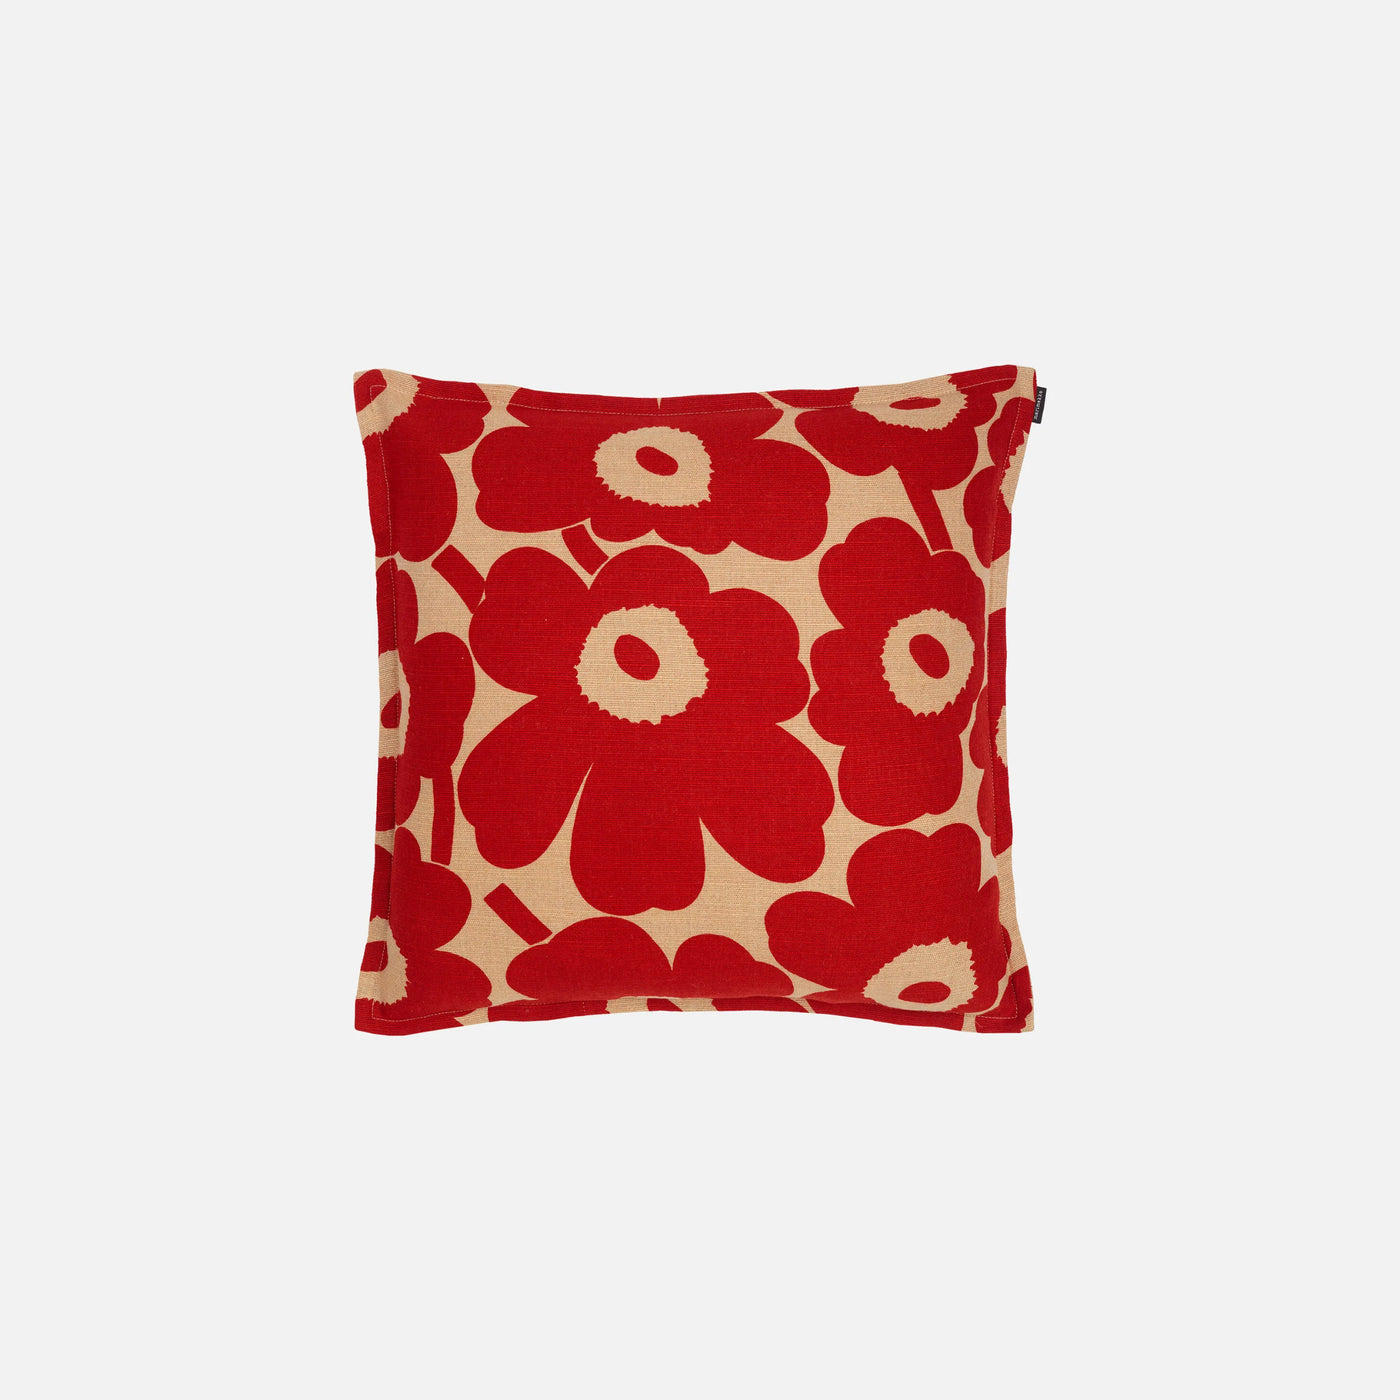 Pieni Unikko Cushion Cover 50 X 50 Cm - copper, red